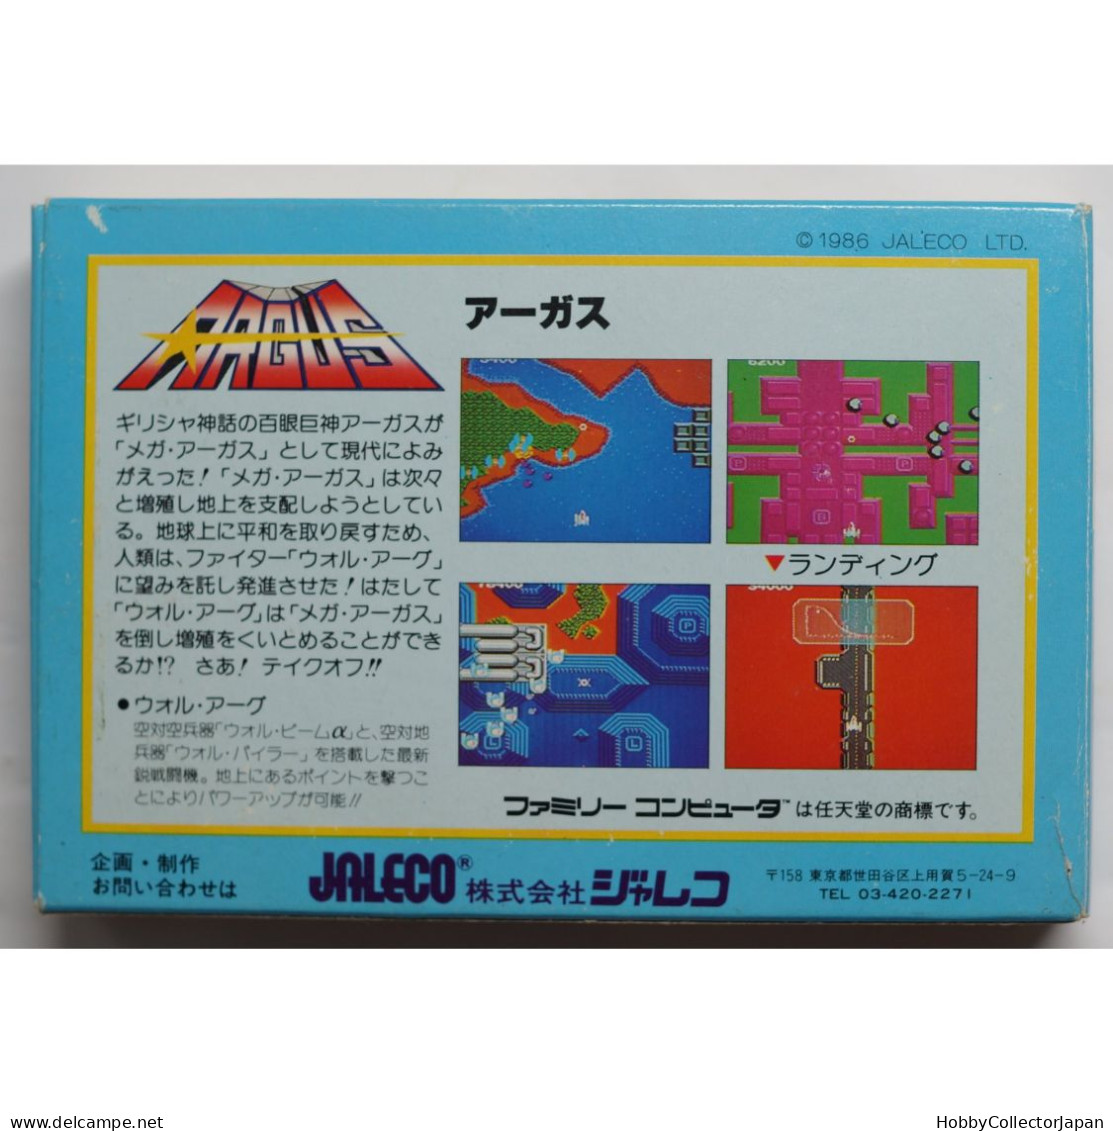 ARGUS JF-07 4907859101079 Famicom Game - Famicom